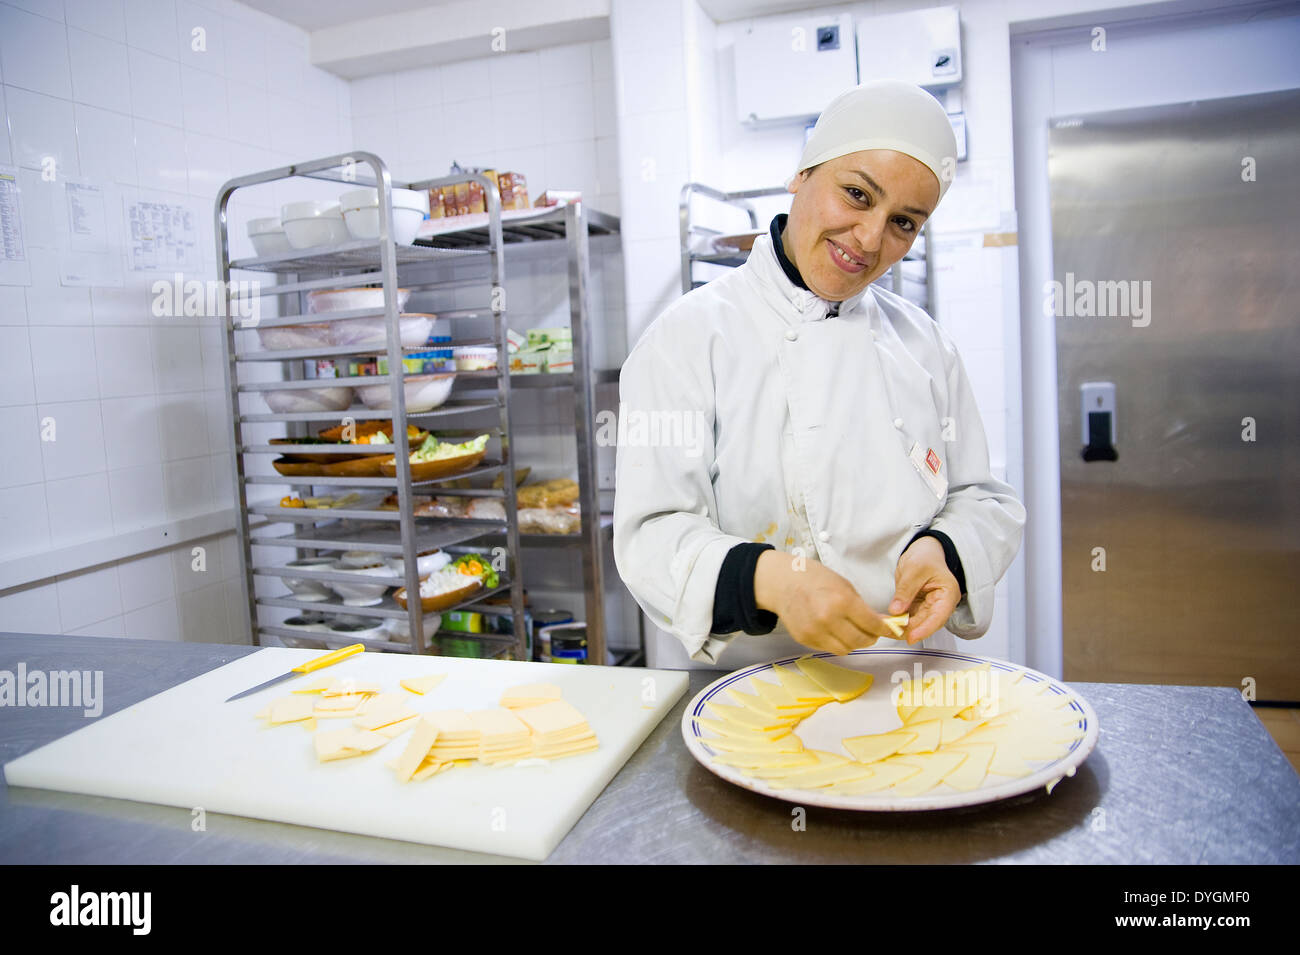 Tunesien, HAMMAMET: Der Tourismus-Branche bietet viele Arbeitsplätze, auch für Frauen. Sie arbeiten auf allen Ebenen, wie sie in der Küche. Stockfoto